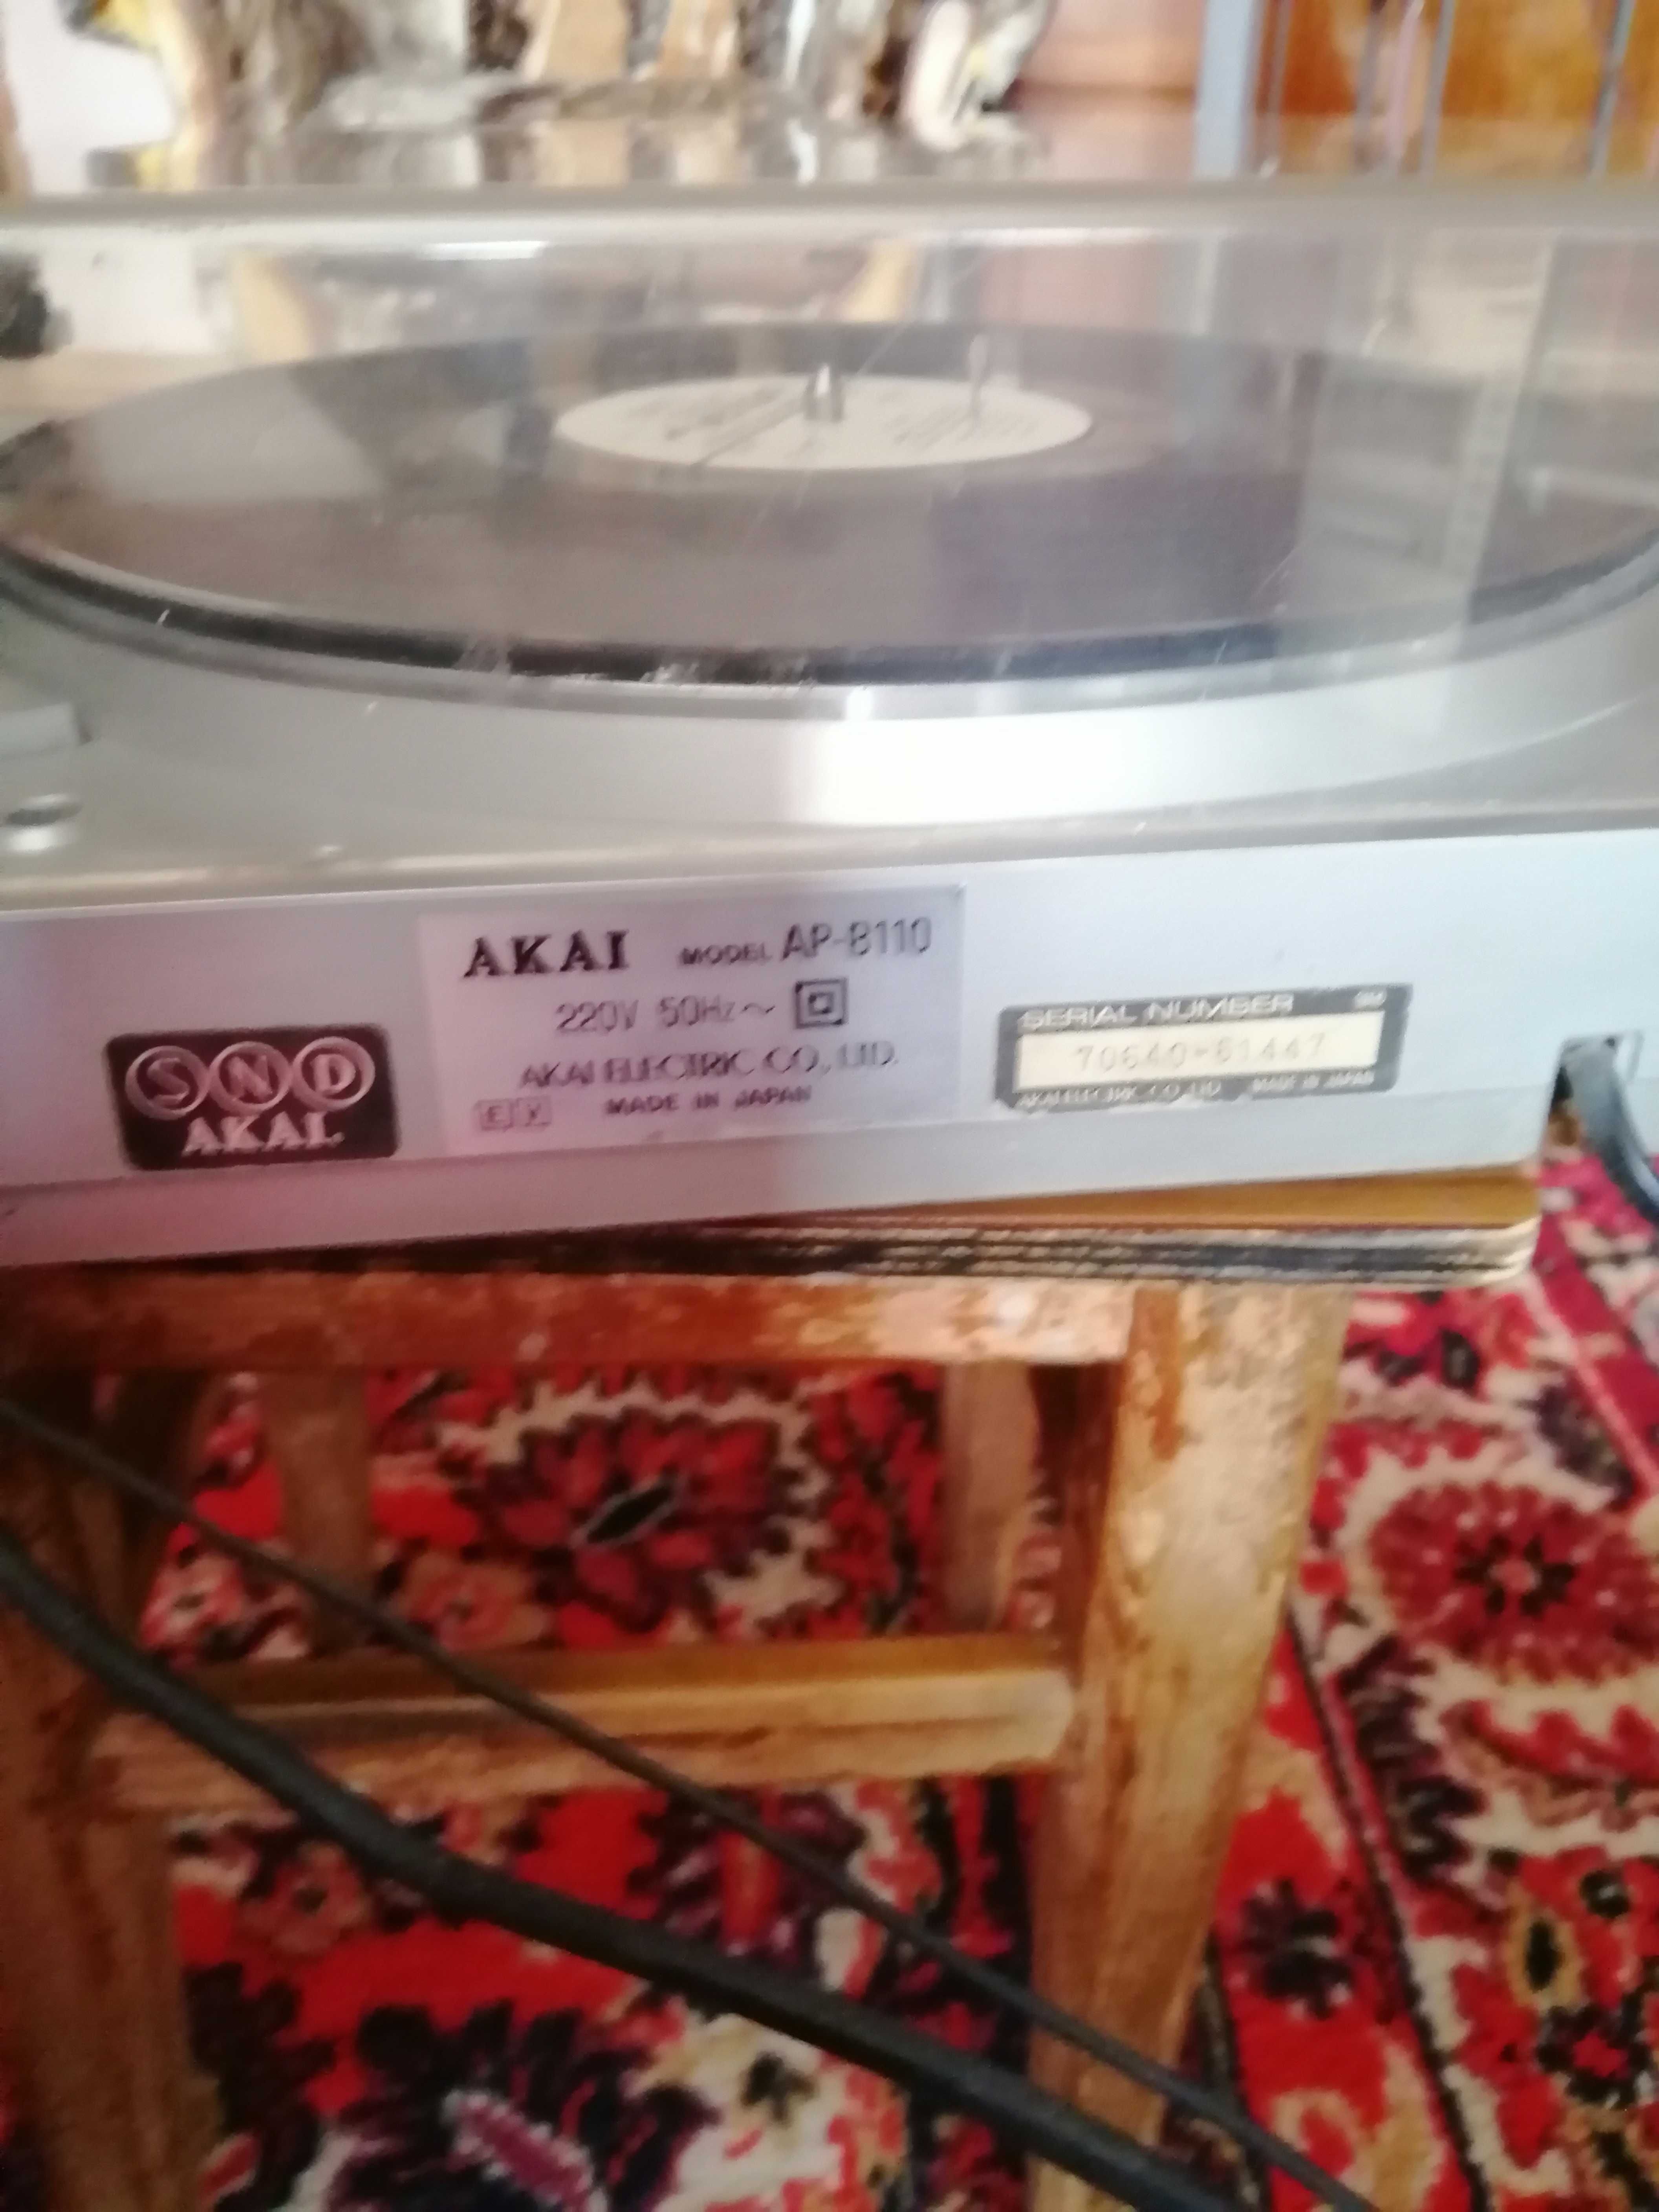 Akai model ap-8110